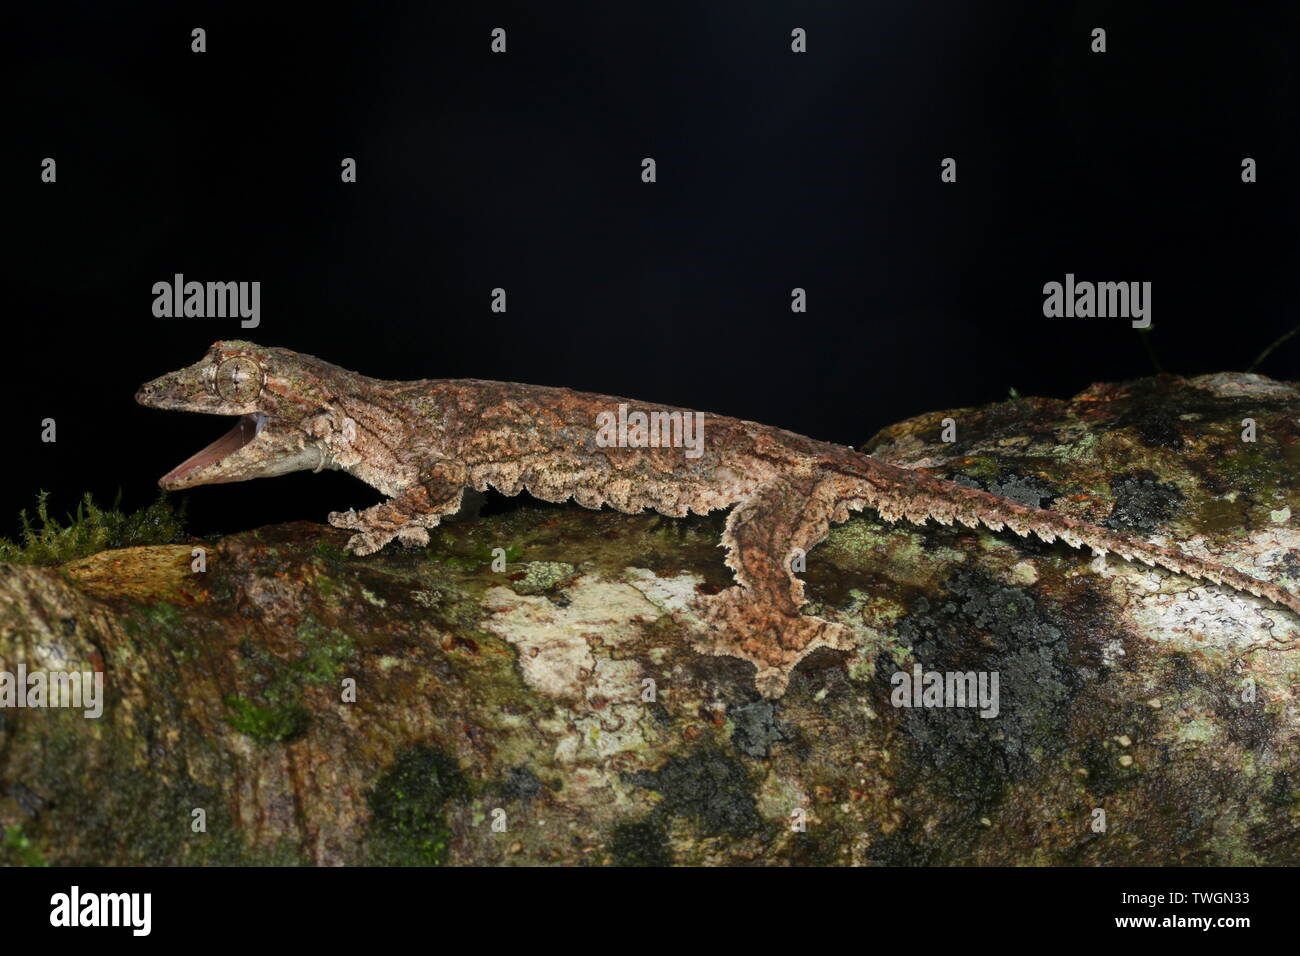 Sabah Flying Gecko (Ptychozoon rhacophorus) Stock Photo